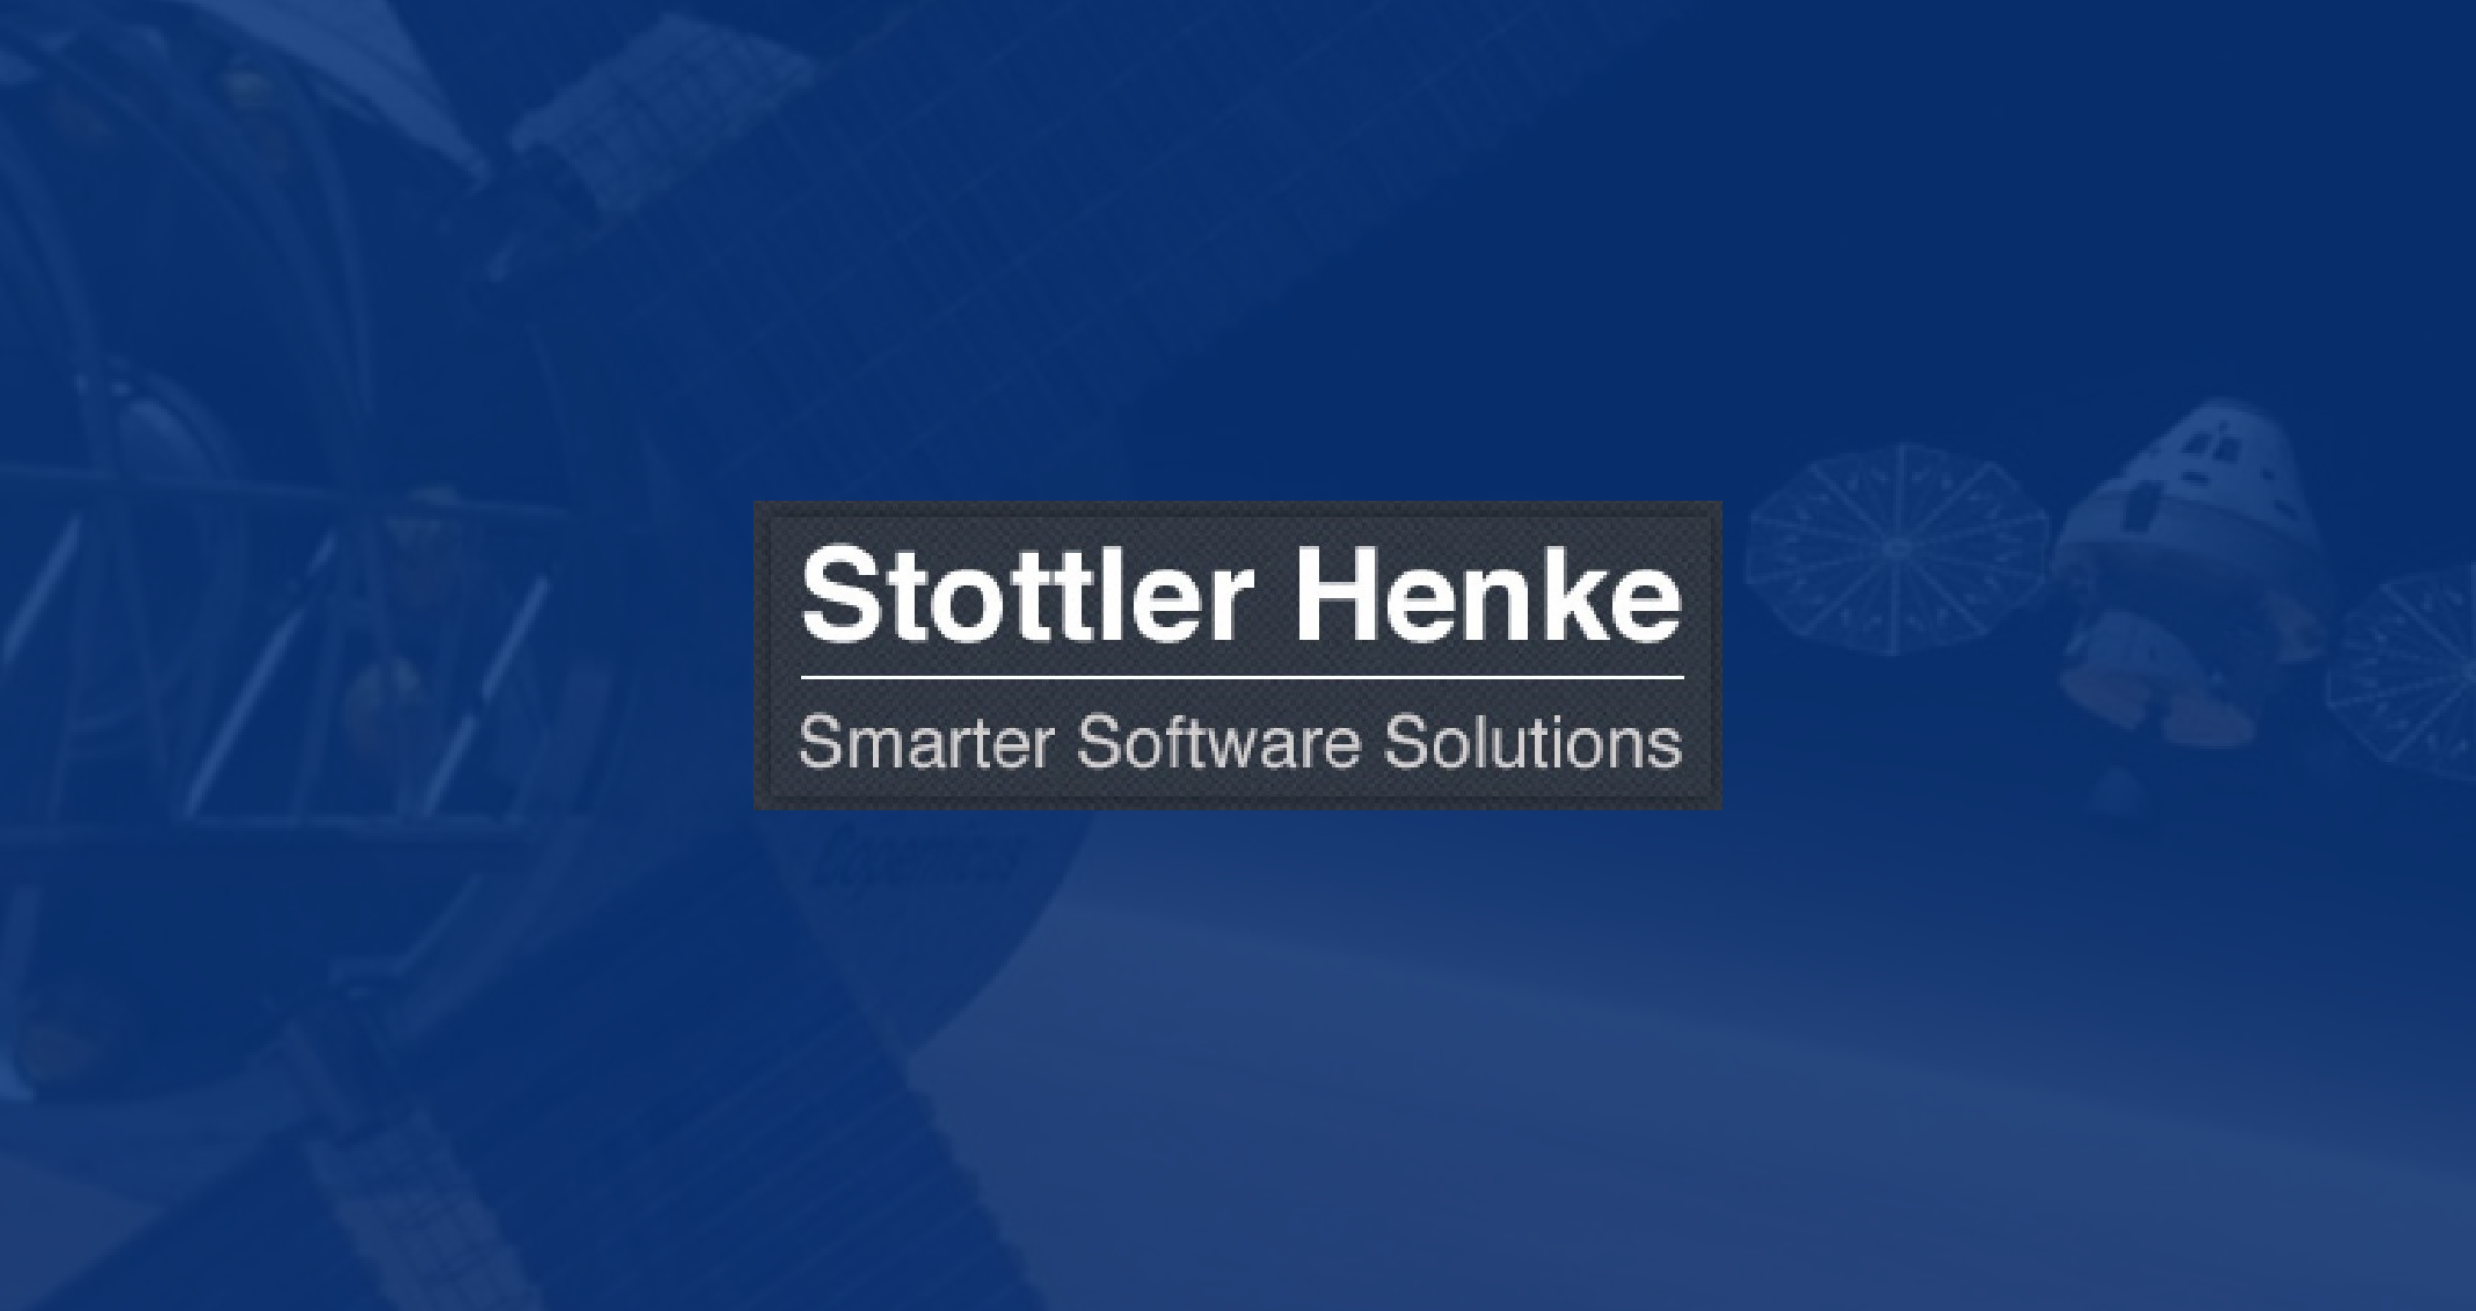 (c) Stottlerhenke.com